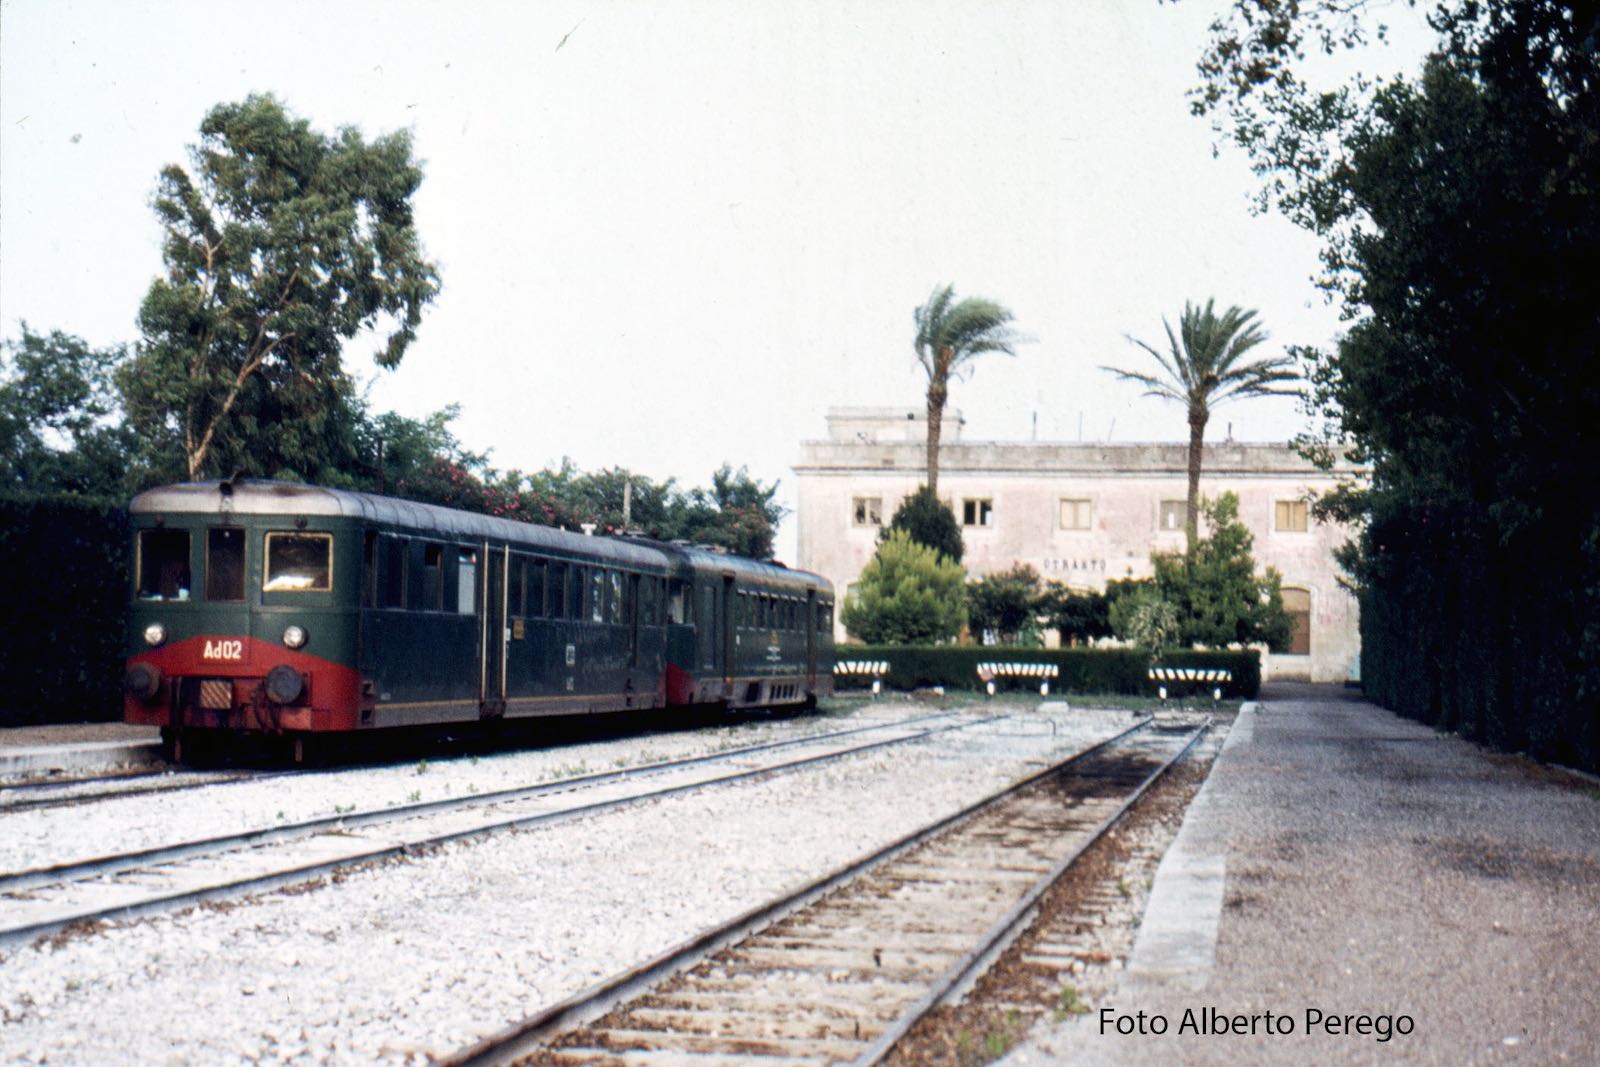 FSE-Ad-02-a-Otranto-Luglio-1974_reduced.jpg